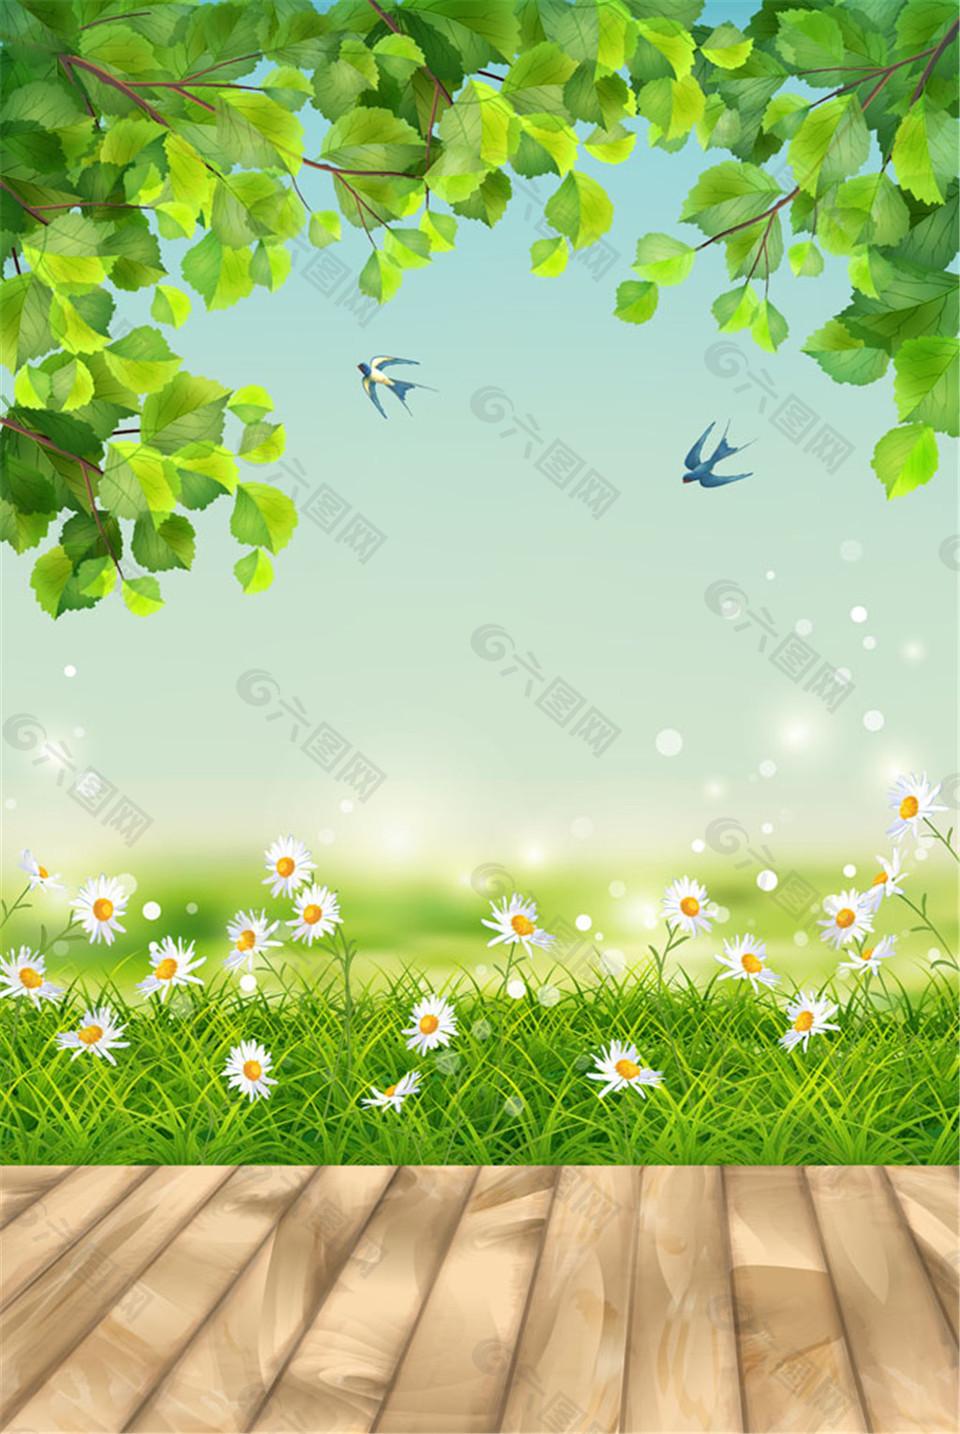 树木和花草图片平面广告素材免费下载(图片编号:8208853)